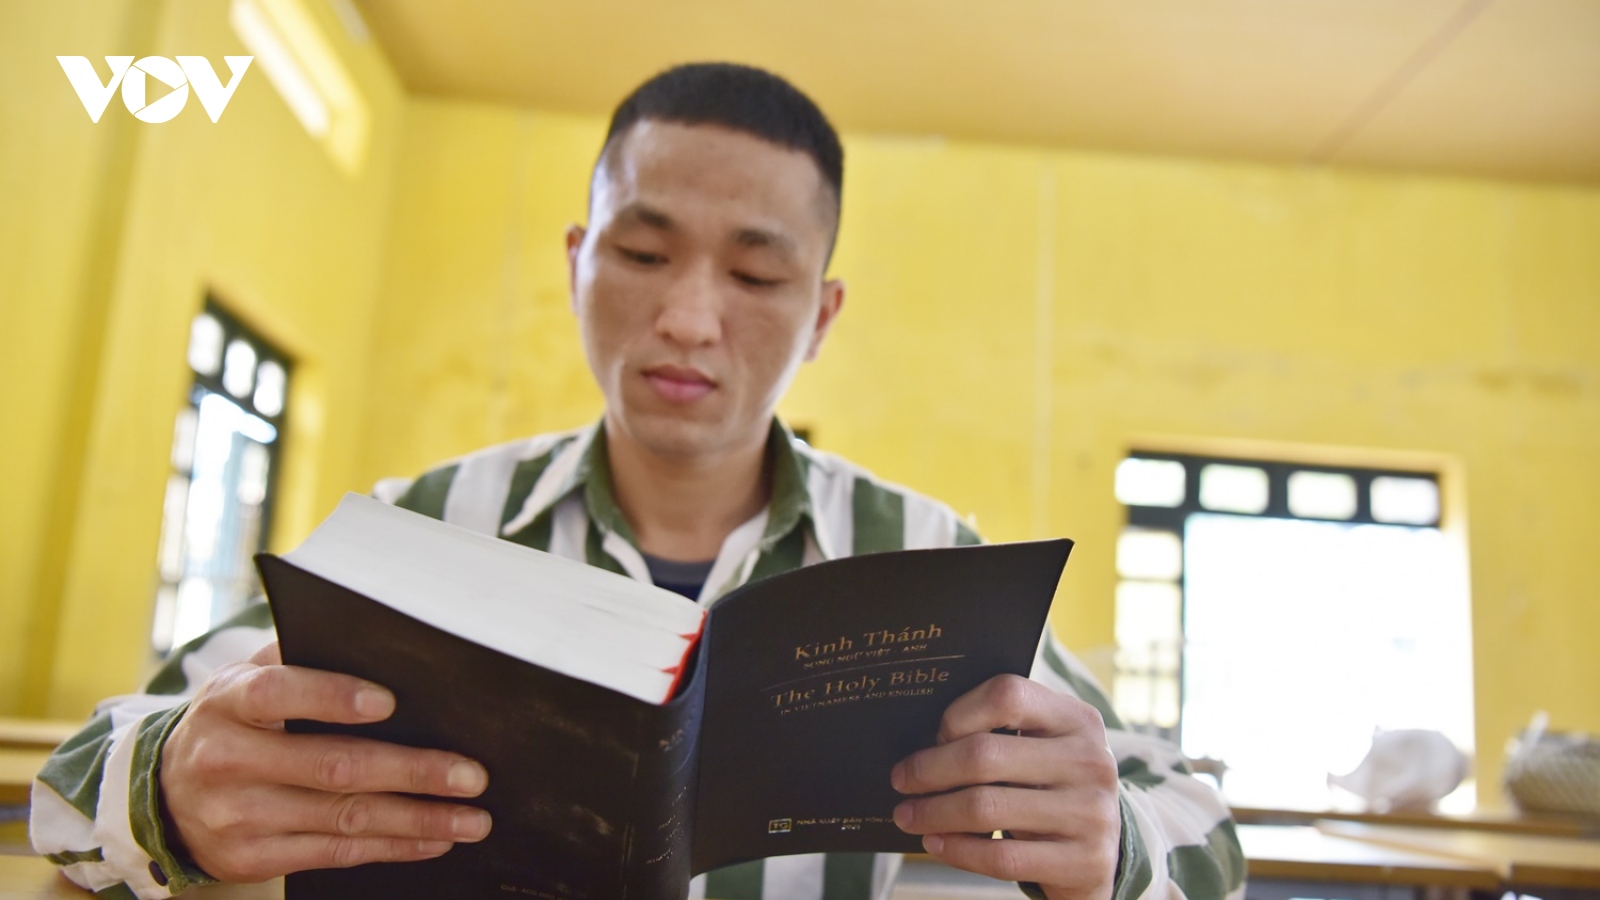 Phạm nhân được tiếp cận sách về tín ngưỡng, tôn giáo như thế nào?